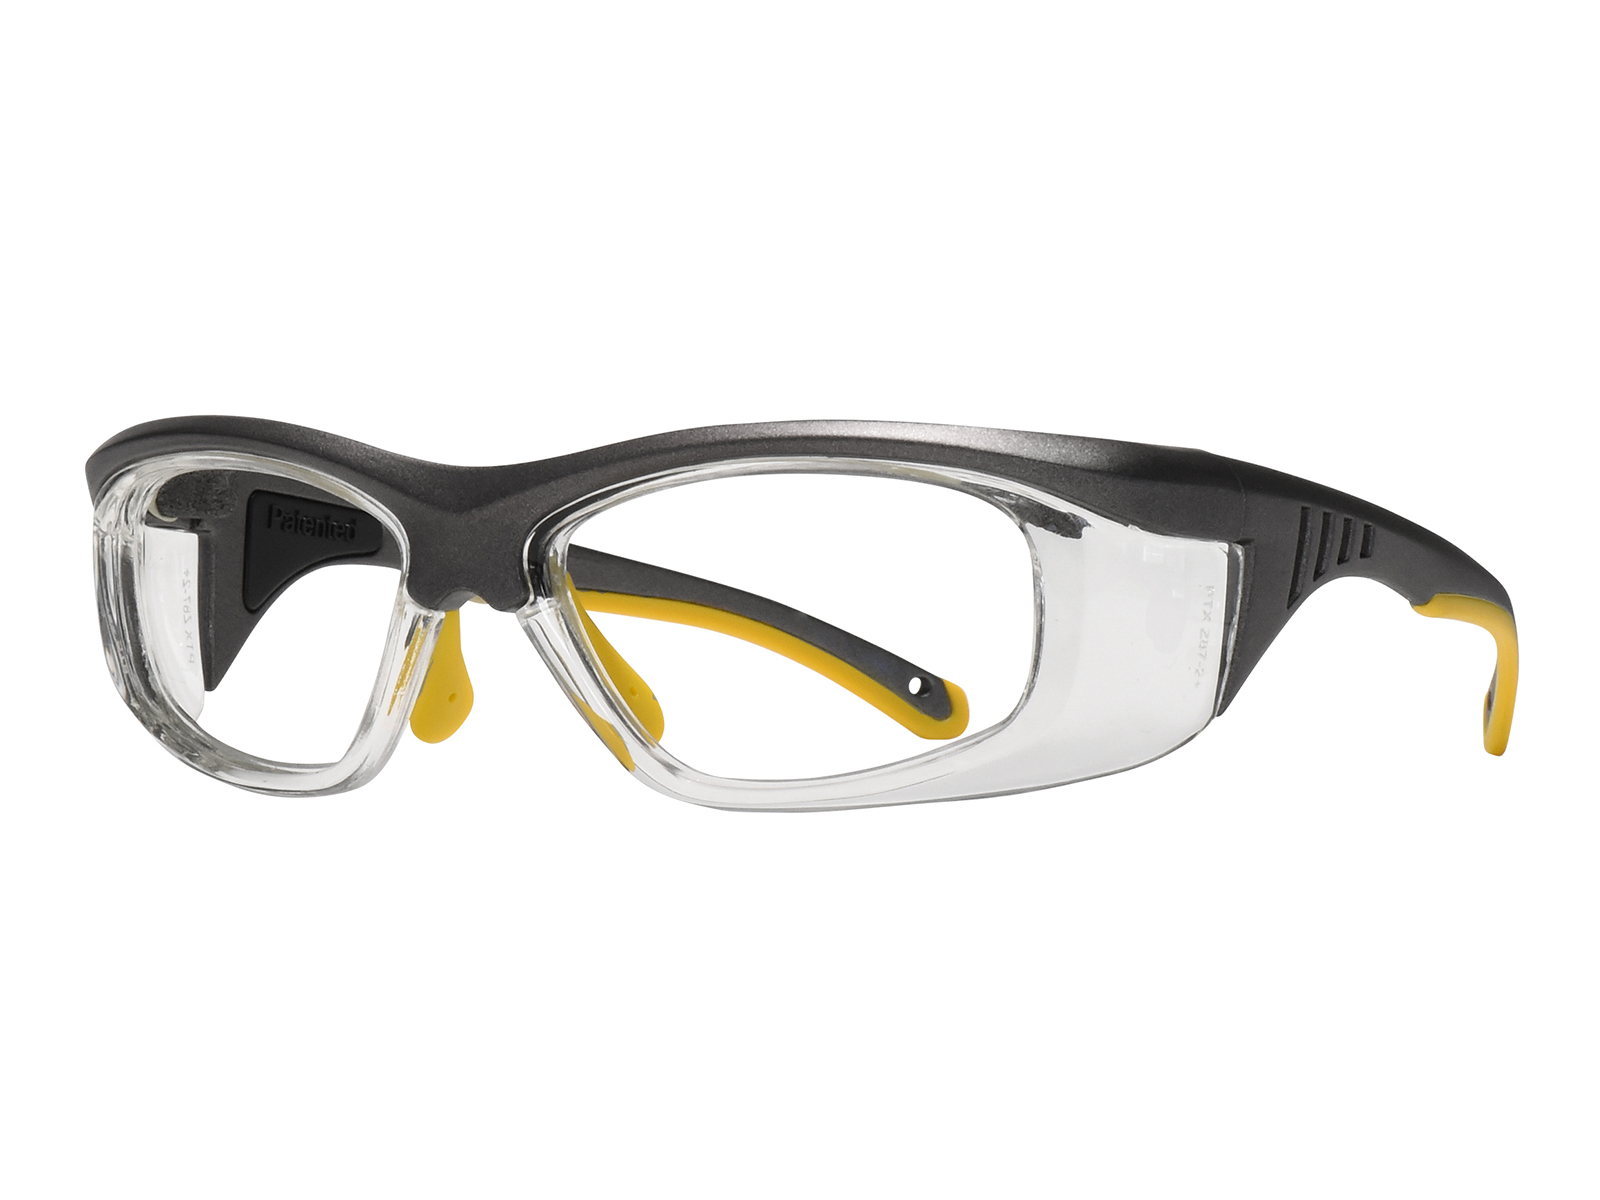 BLUPOND Gafas amarillas para hombres y mujeres – Gafas de seguridad  antiempañamiento semipolarizadas para protección ocular definitiva